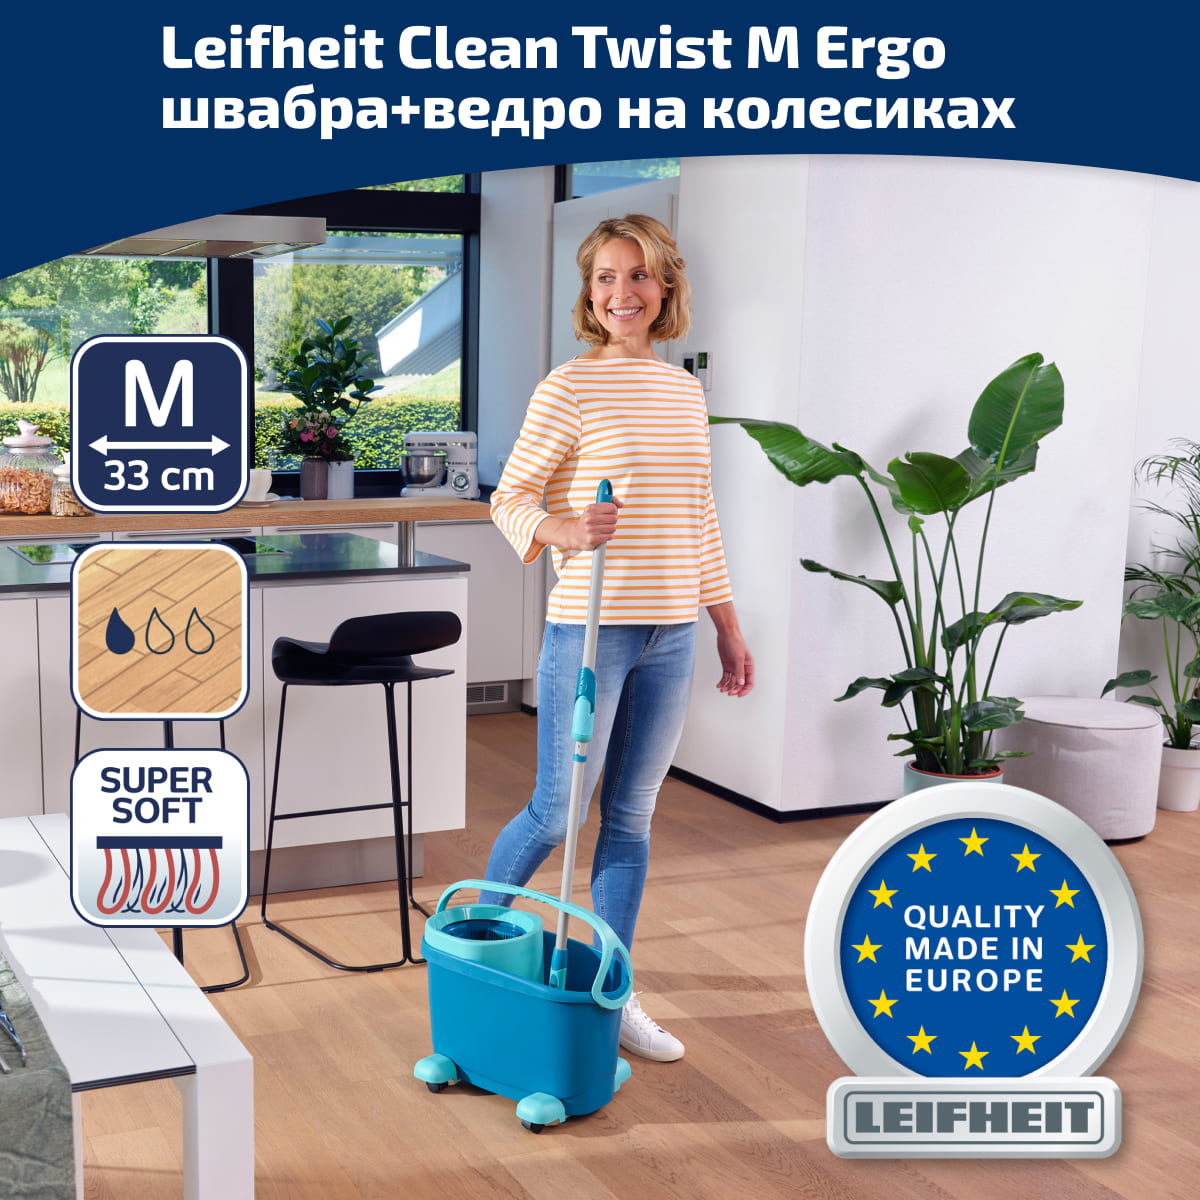 Комплект для влажной уборки Leifheit Clean Twist M Ergo швабра и ведро на колесиках Leifheit 52121, цвет зеленый - фото 1